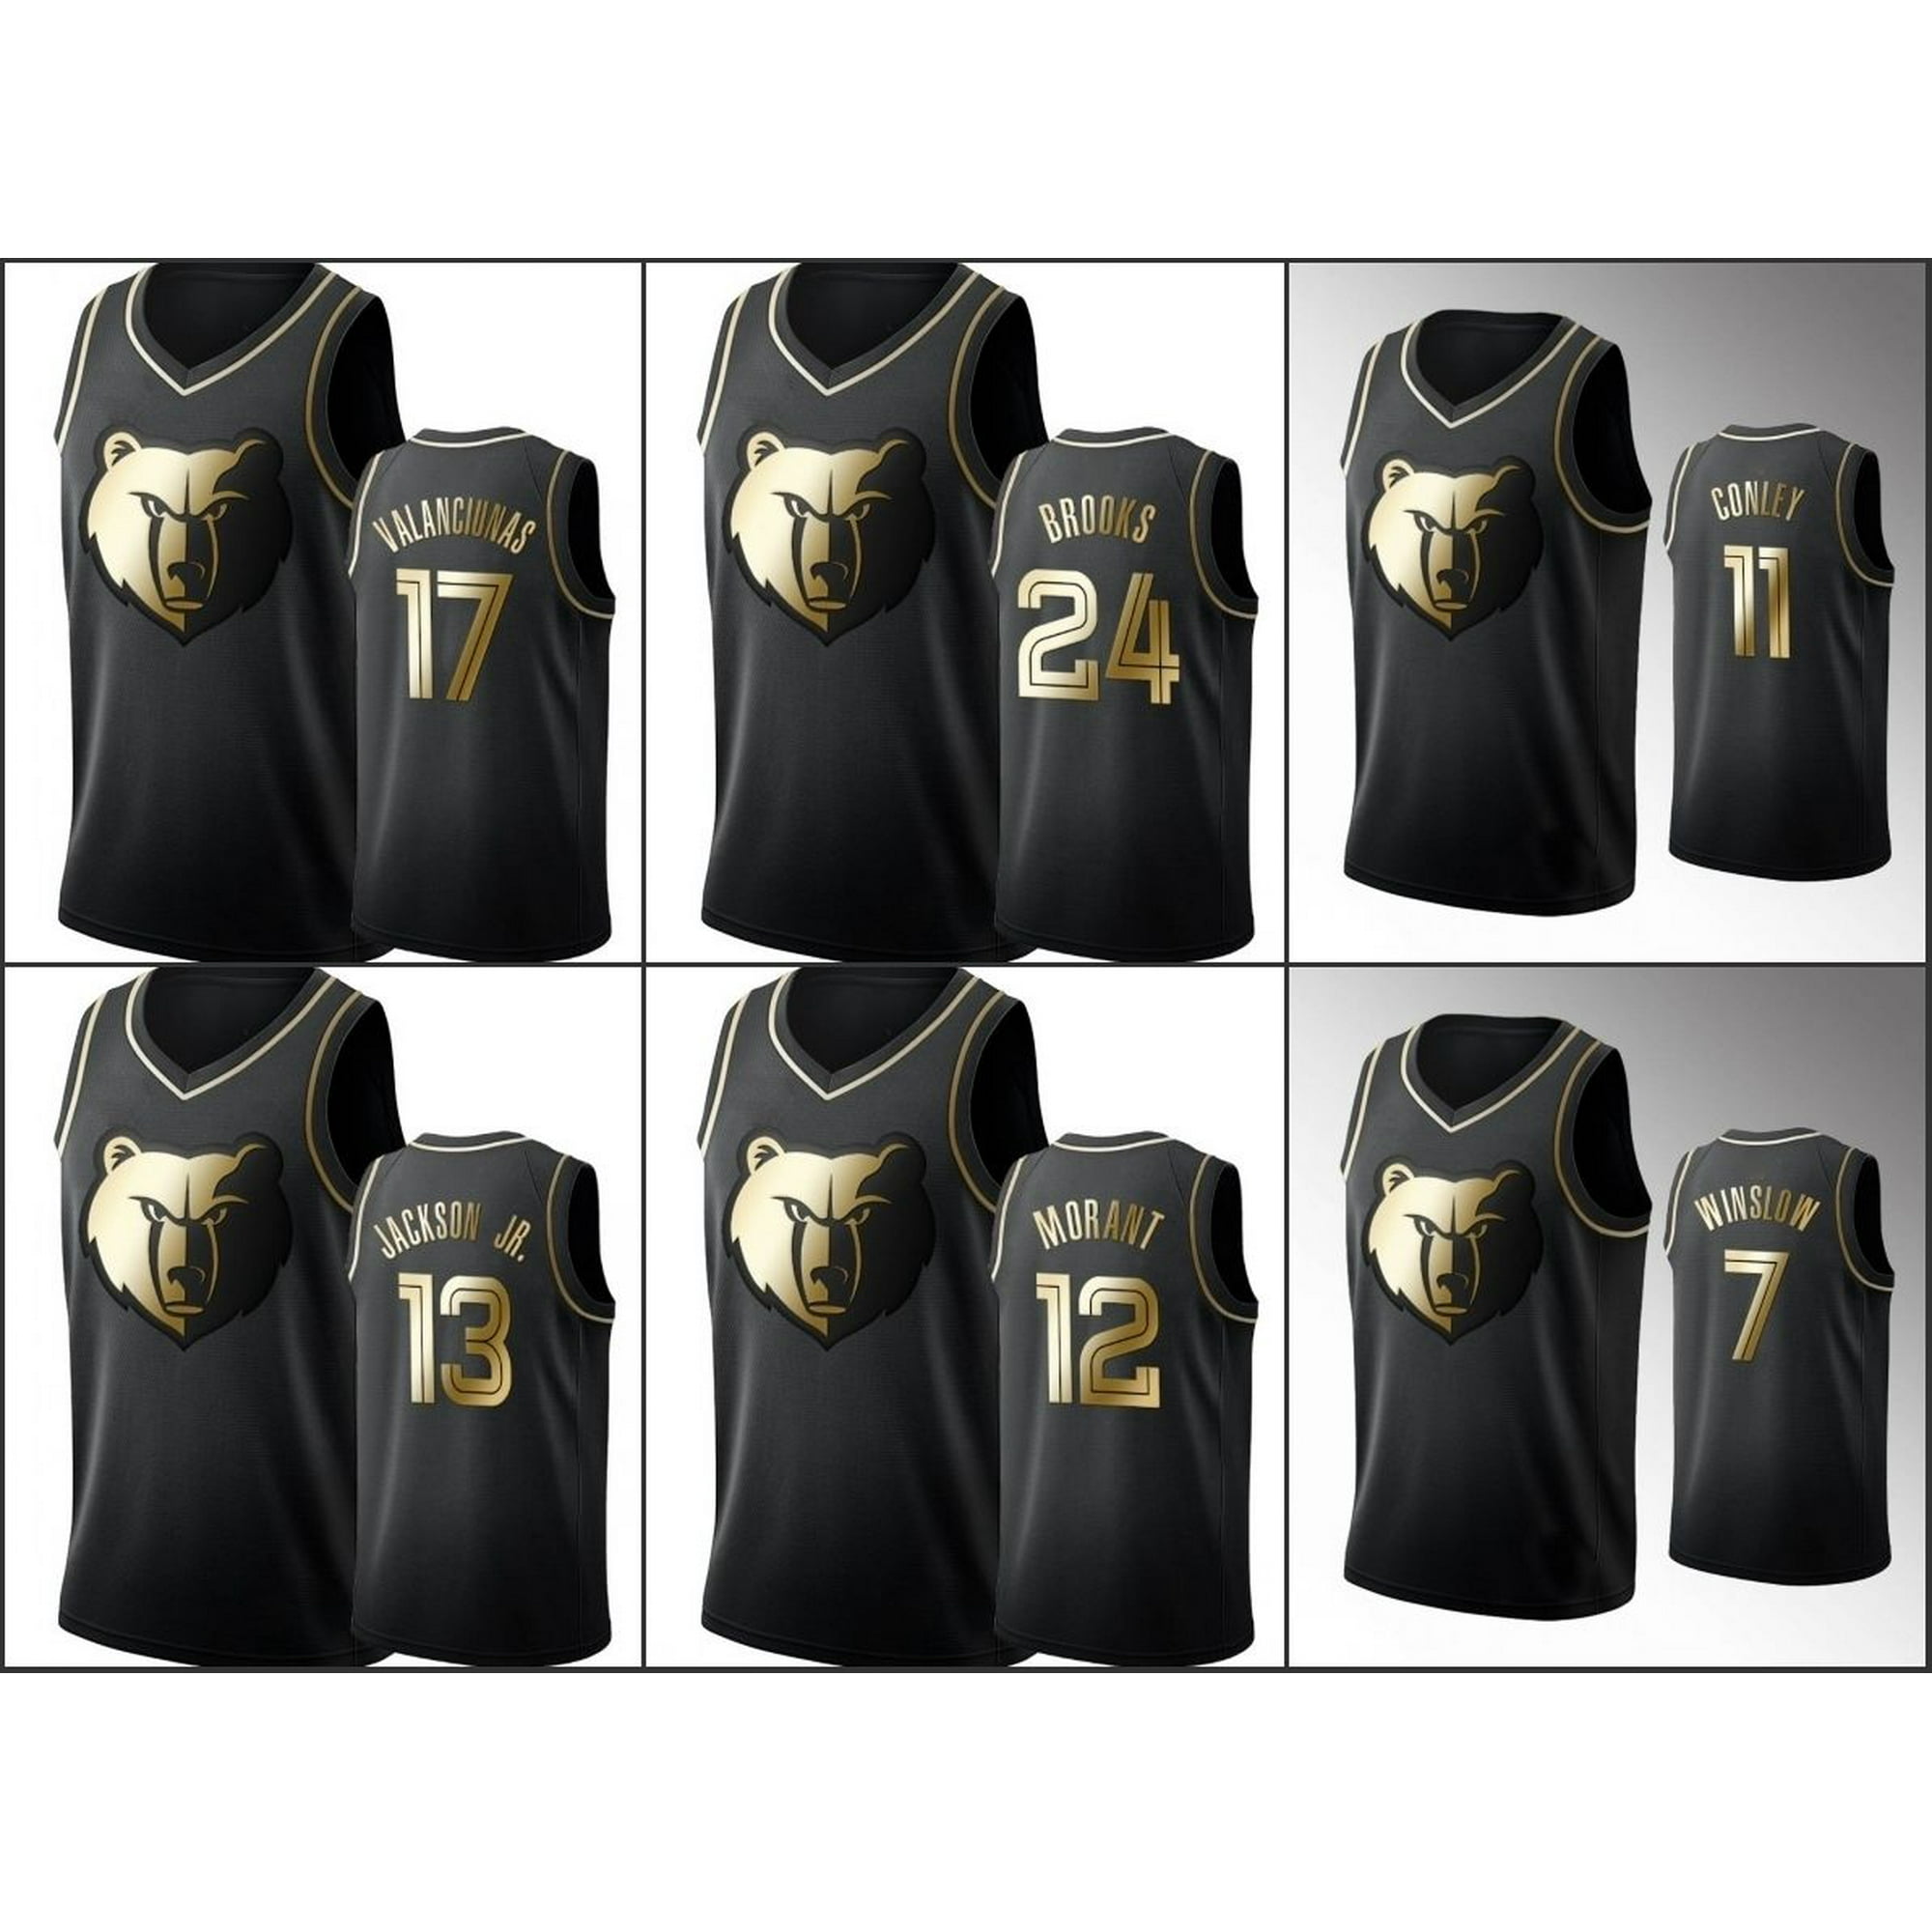 memphis grizzlies gold jersey